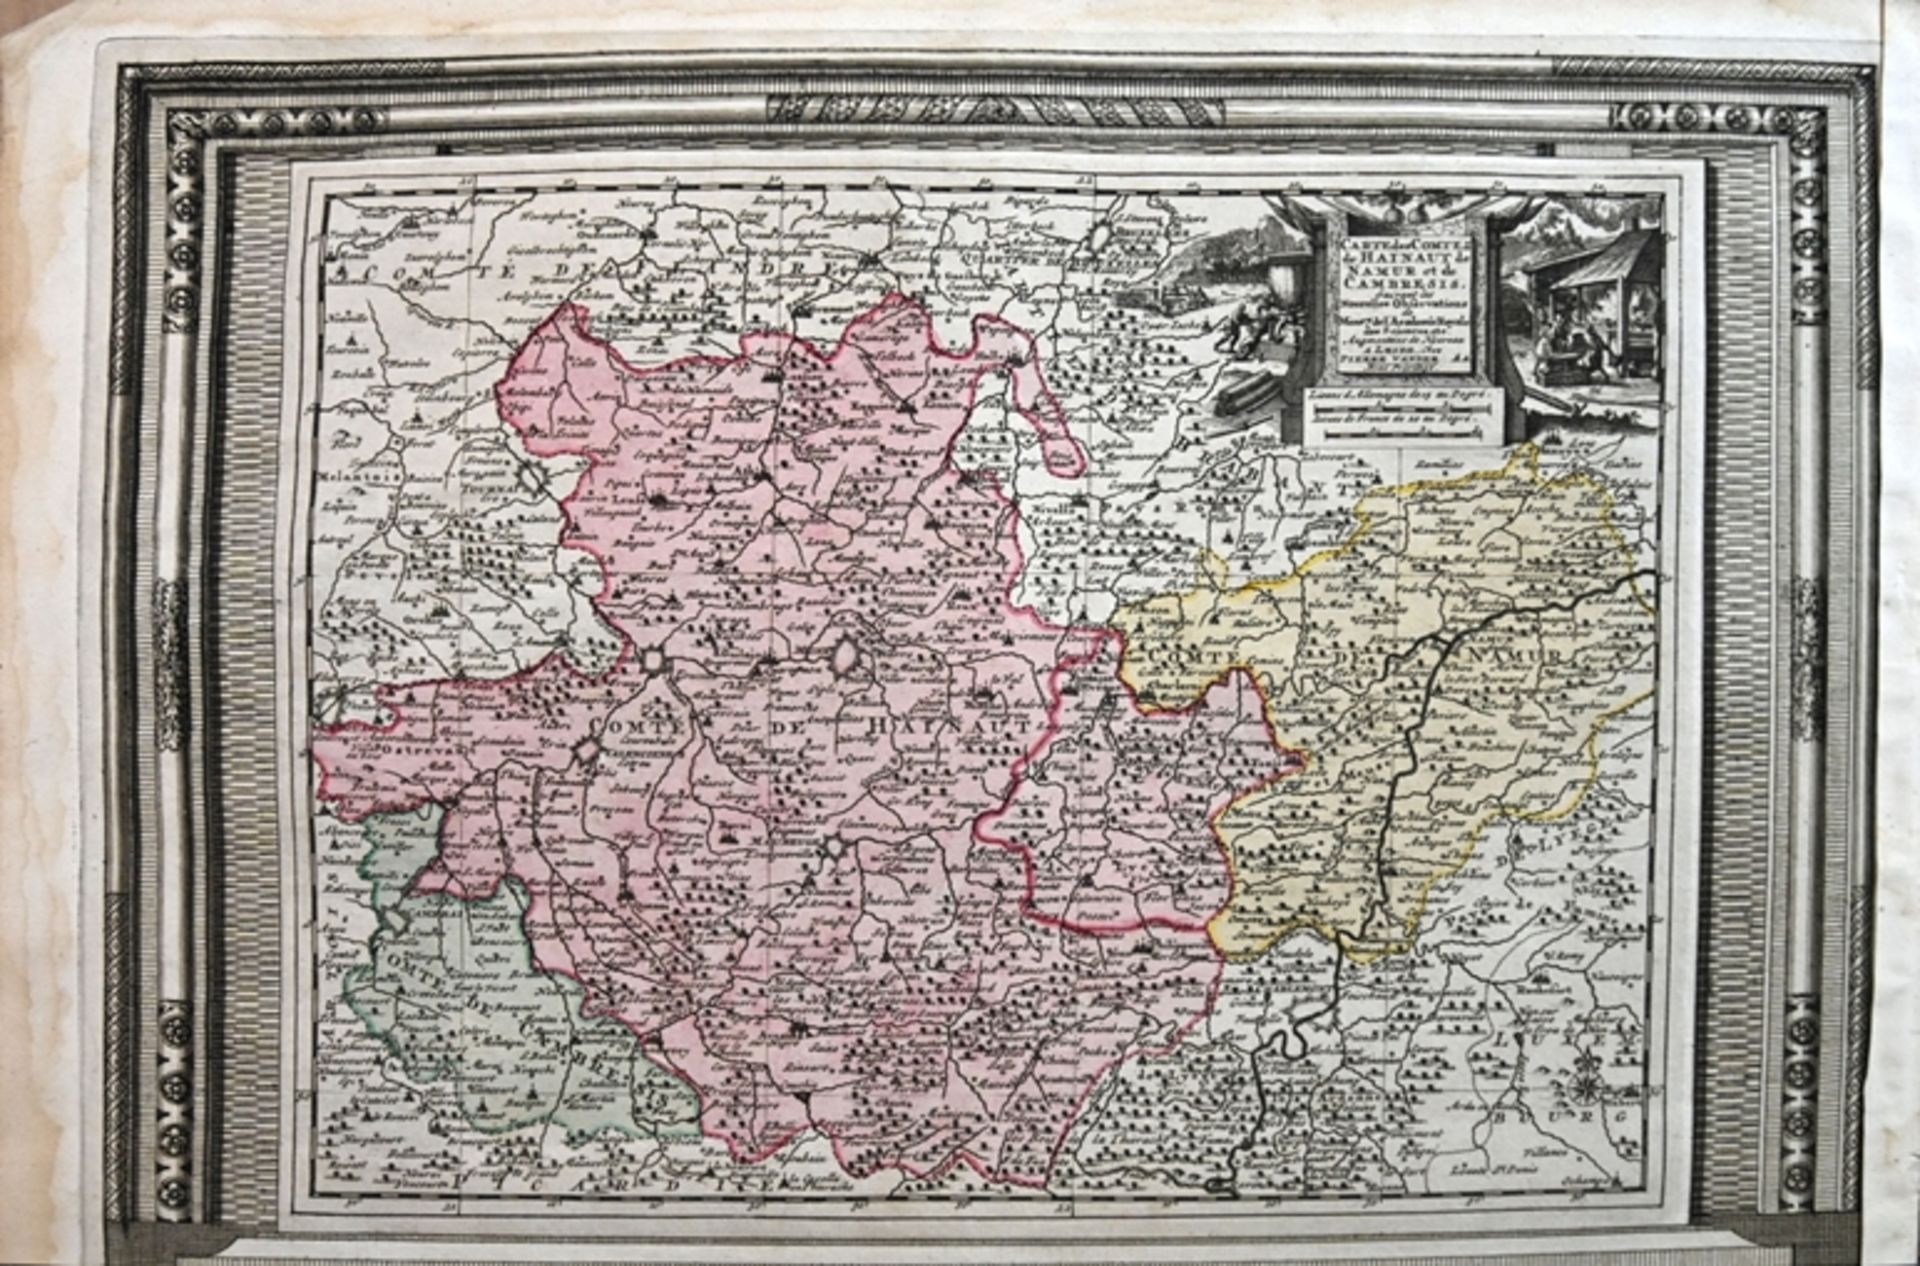 BENELUX "Carte des Comtez de Hainaut de Namur et de Cambresis. Suivant les Nouvelles Observations d